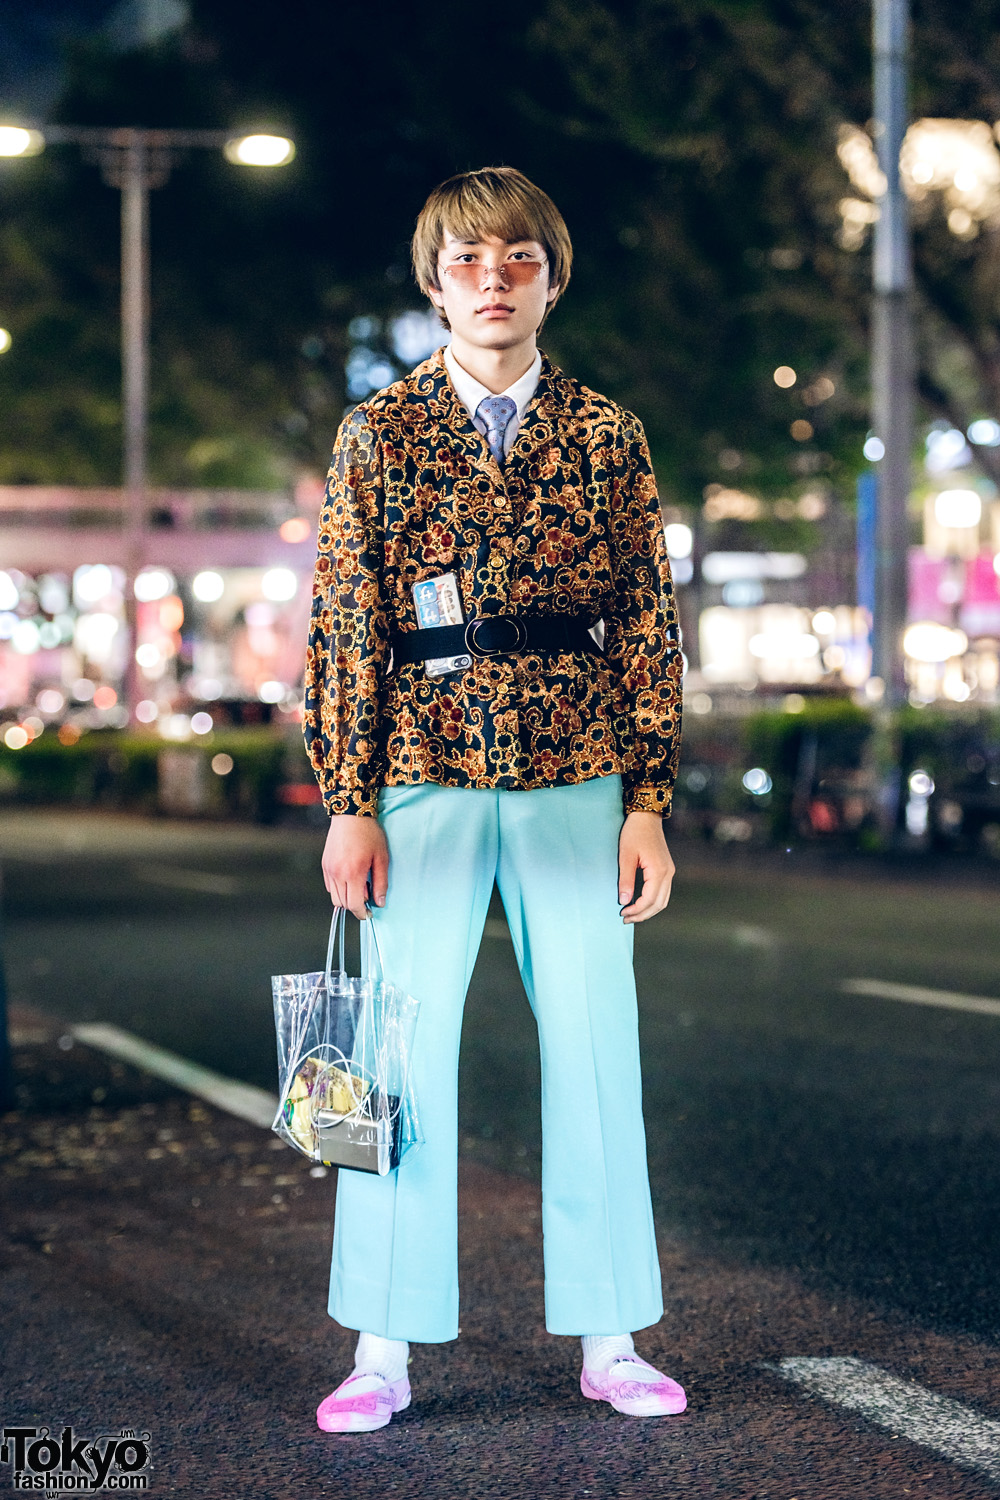 Retro Vintage Menswear Style in Harajuku w/ Brocade Blazer, Aqua Pants, School Shoes & Clear Tote Bag